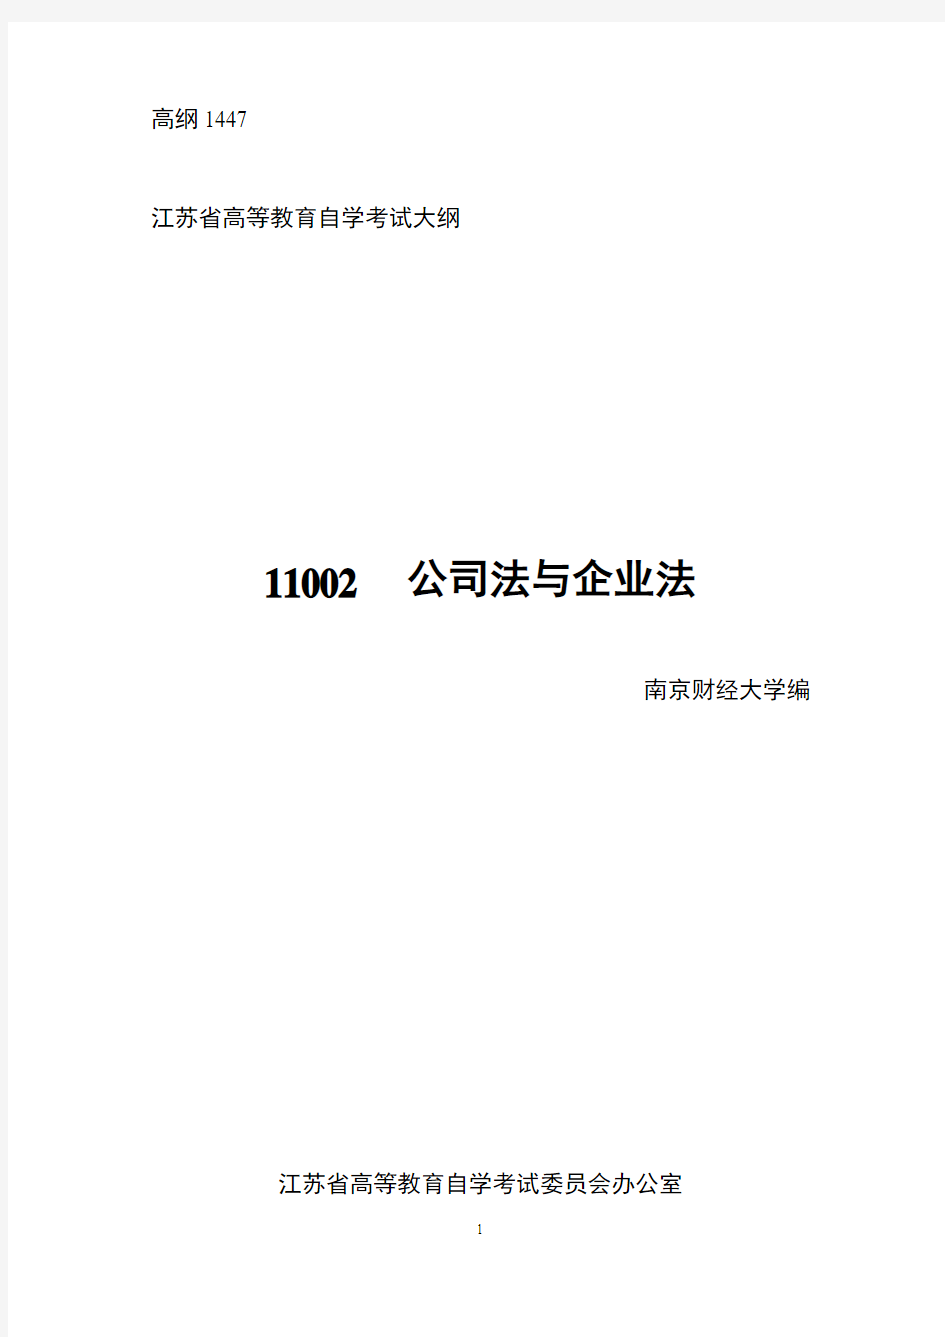 江苏自考 11002公司法与企业法 考试大纲